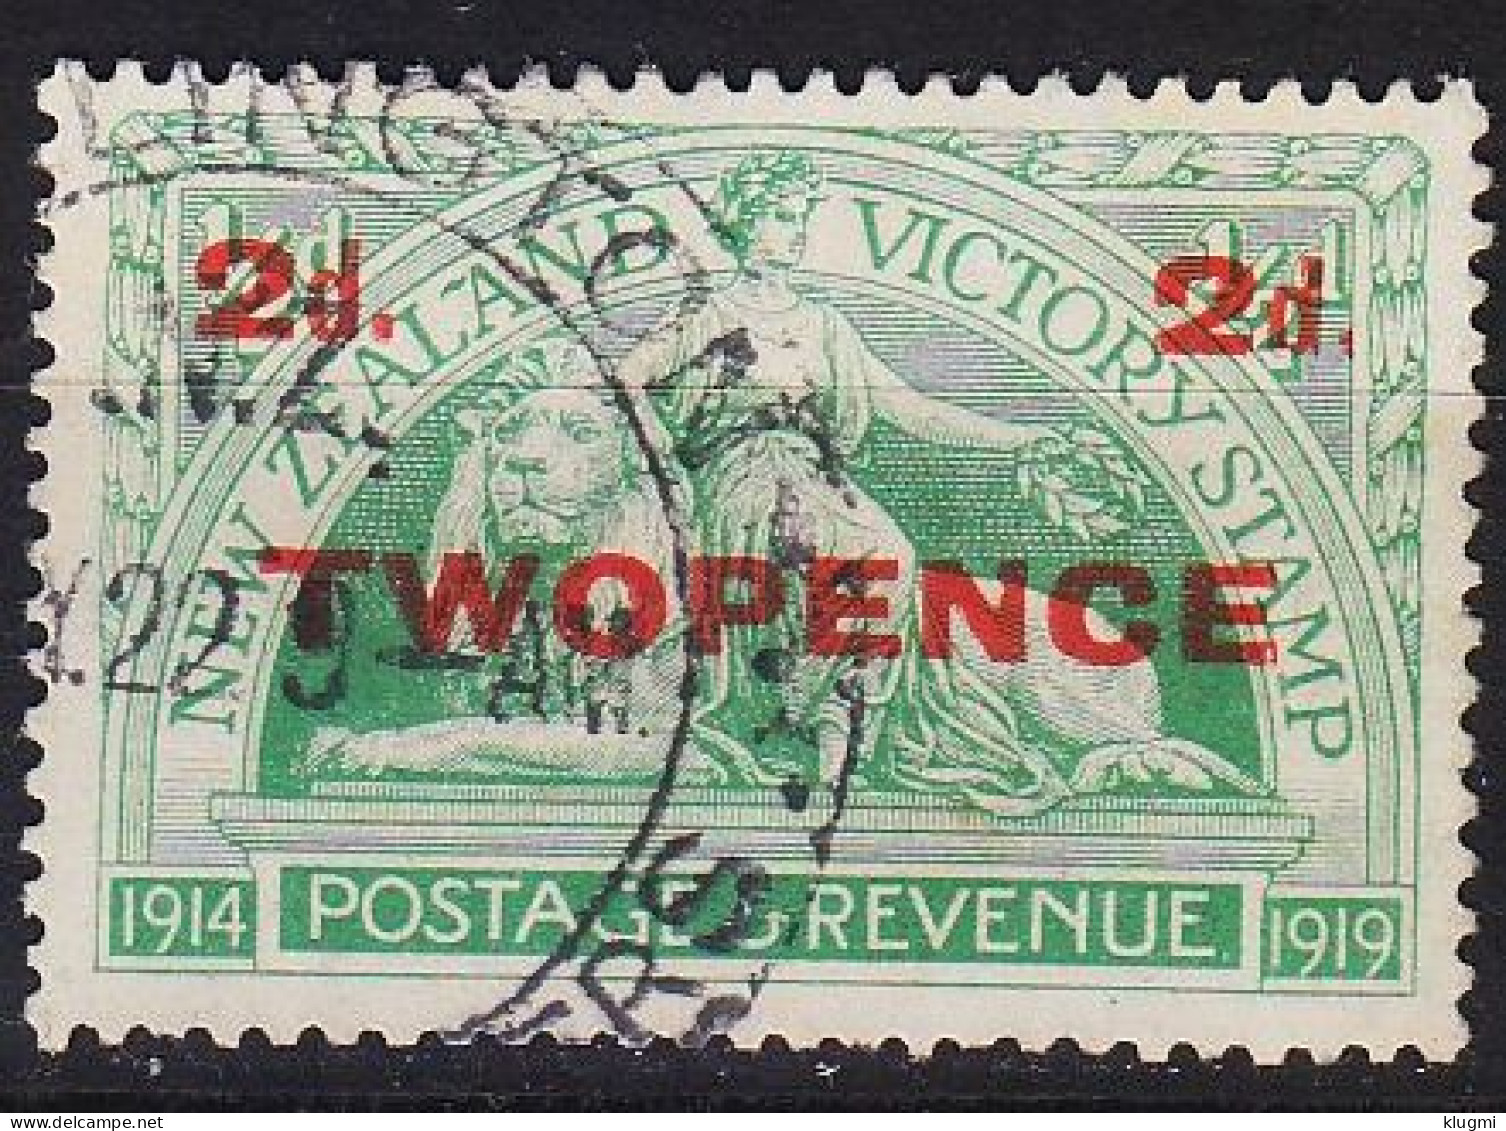 NEUSEELAND NEW ZEALAND [1922] MiNr 0164 ( O/used ) - Used Stamps